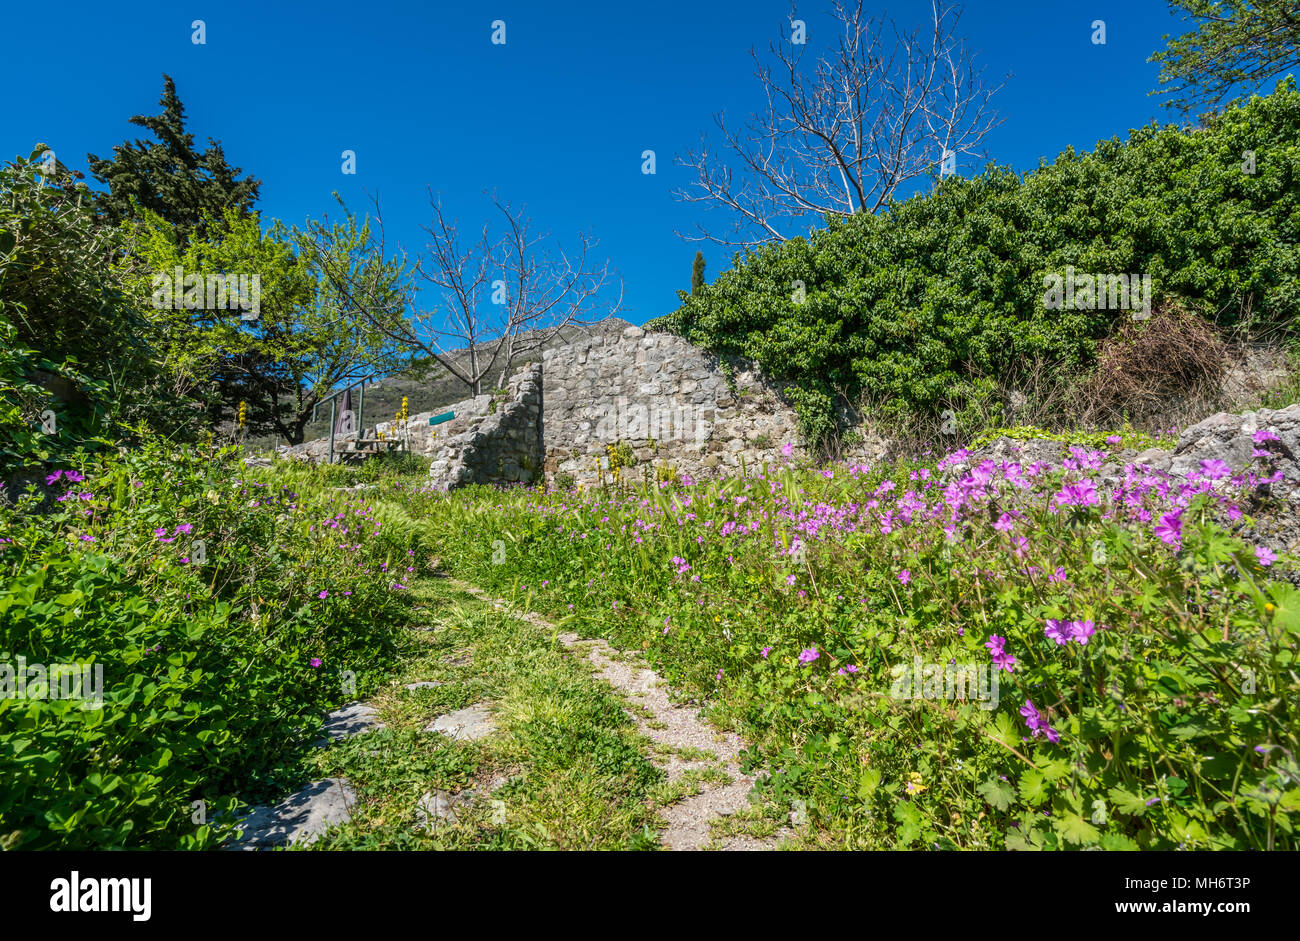 Sentier de marche parmi les fleurs violettes dans les ruines de l'ancienne citadelle et les remparts de la ville de Stari Bar ville près de Bar city, Monténégro Banque D'Images